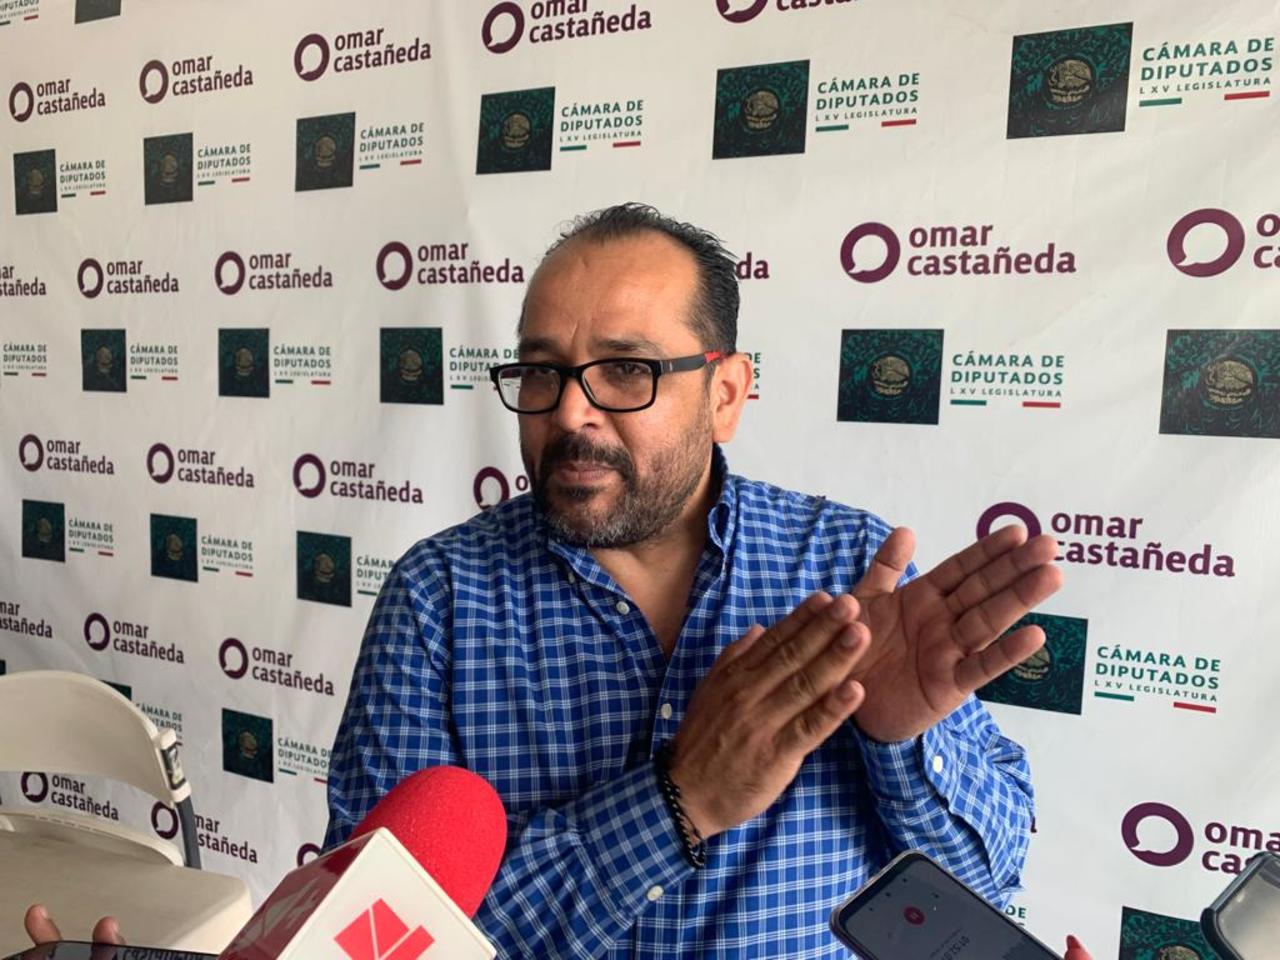 El diputado federal con licencia, Omar Castañeda, aseguró que lo que pasa en Gómez Palacio 'es un circo con payasos y animales'.